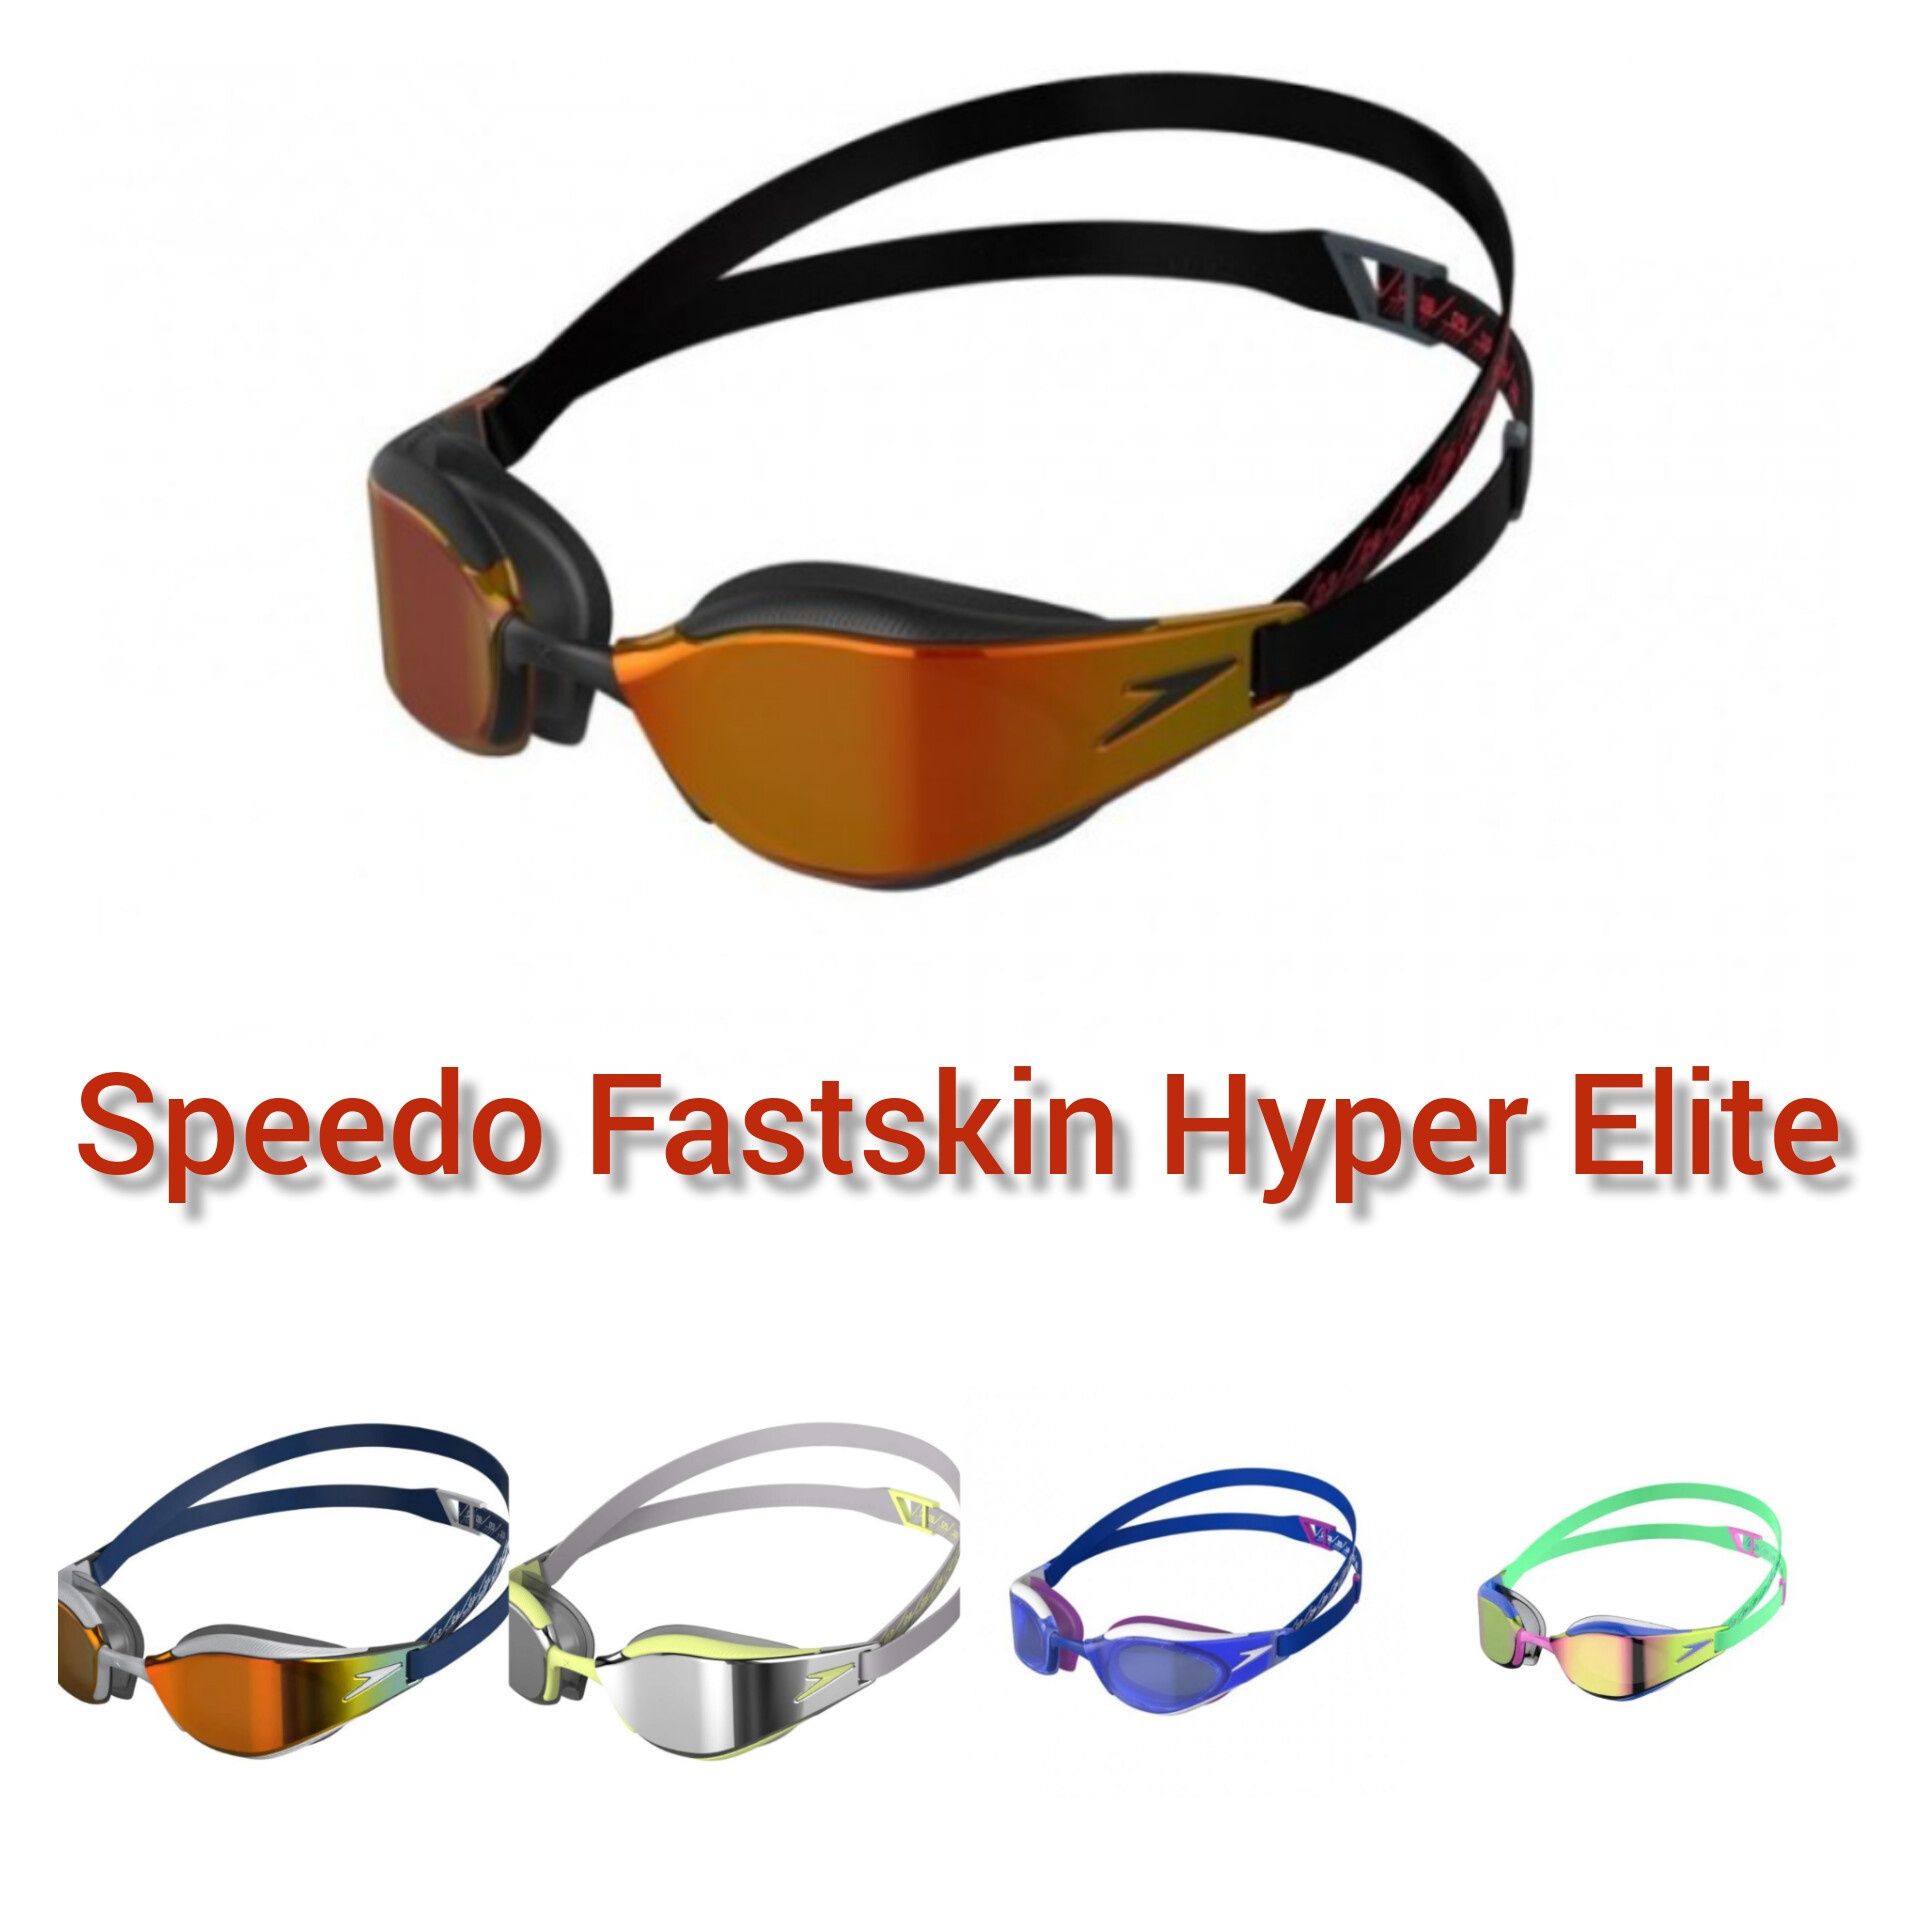 Окуляри Speedo Fastskin Hyper Elite, Speedsocket 2, PURE FOCUS, VUE